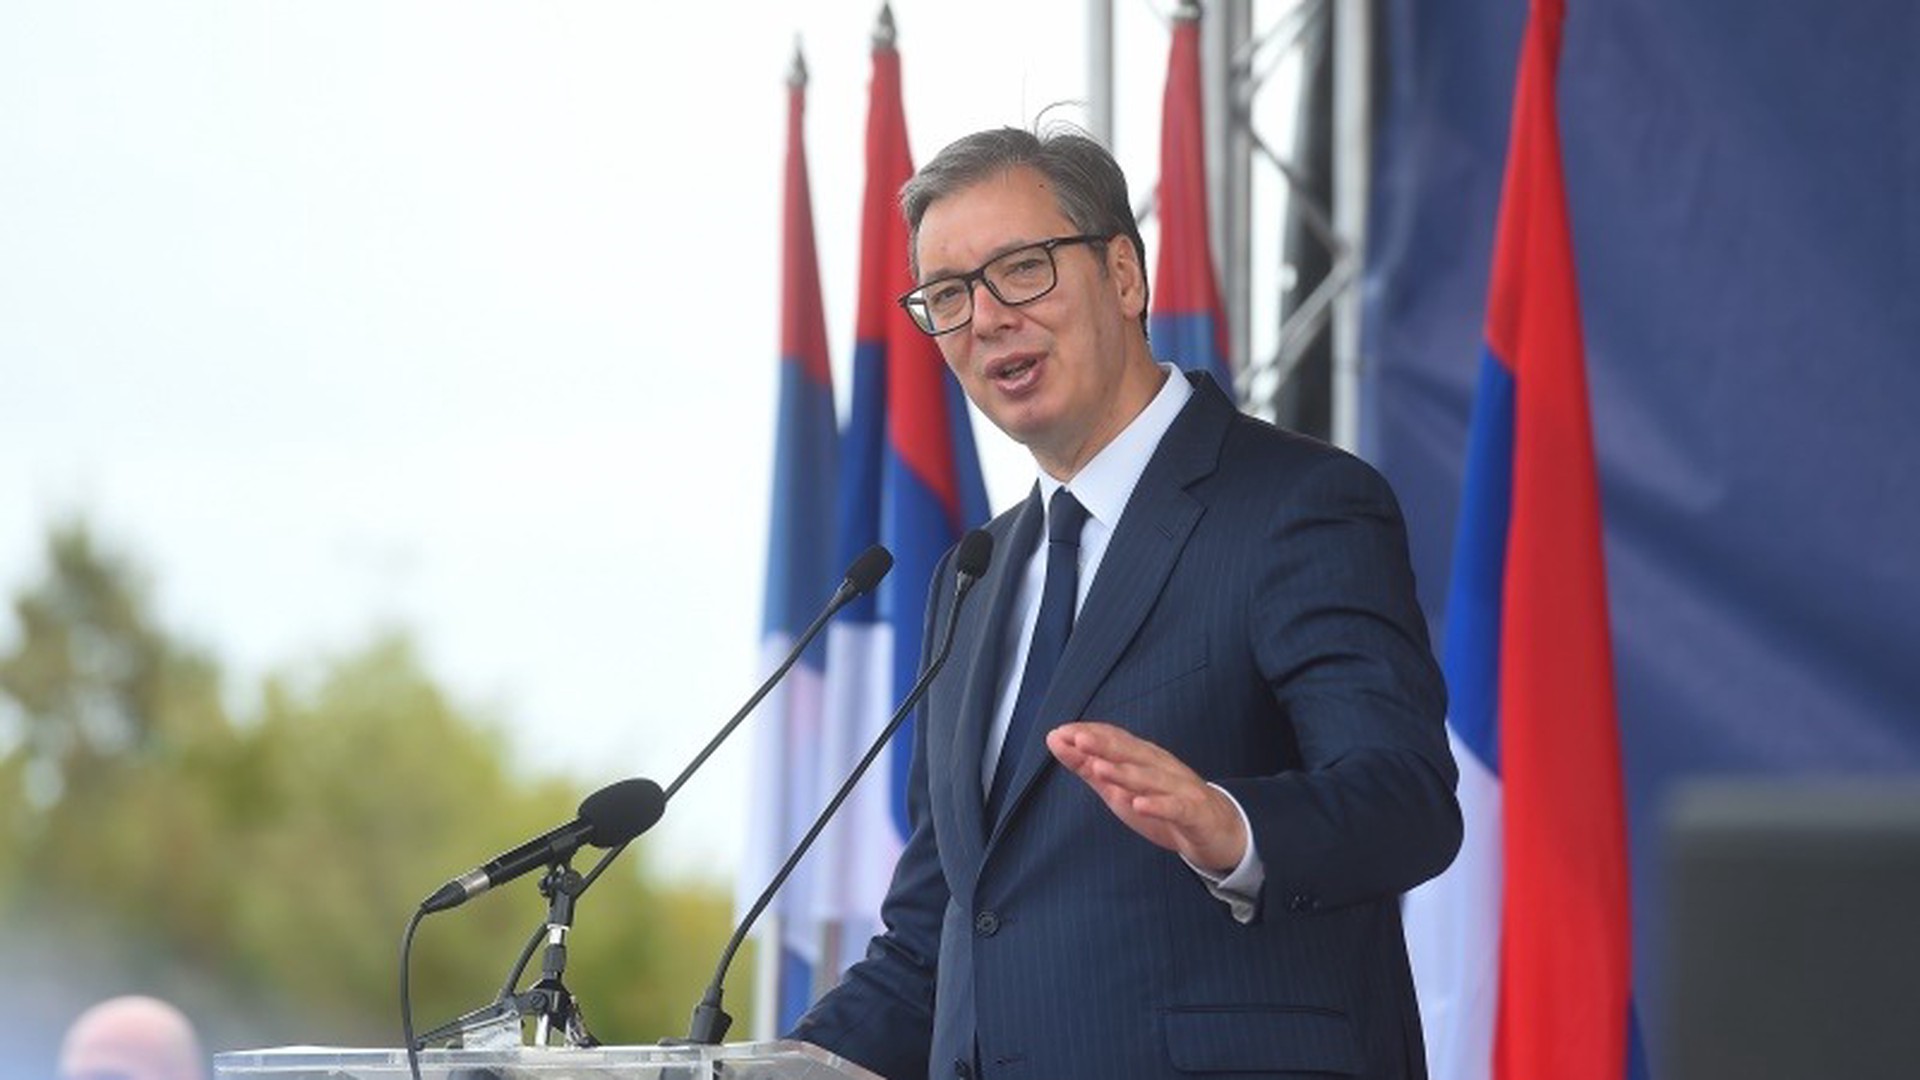 Вучич заявил о готовности обсуждать план ЕС по Косово